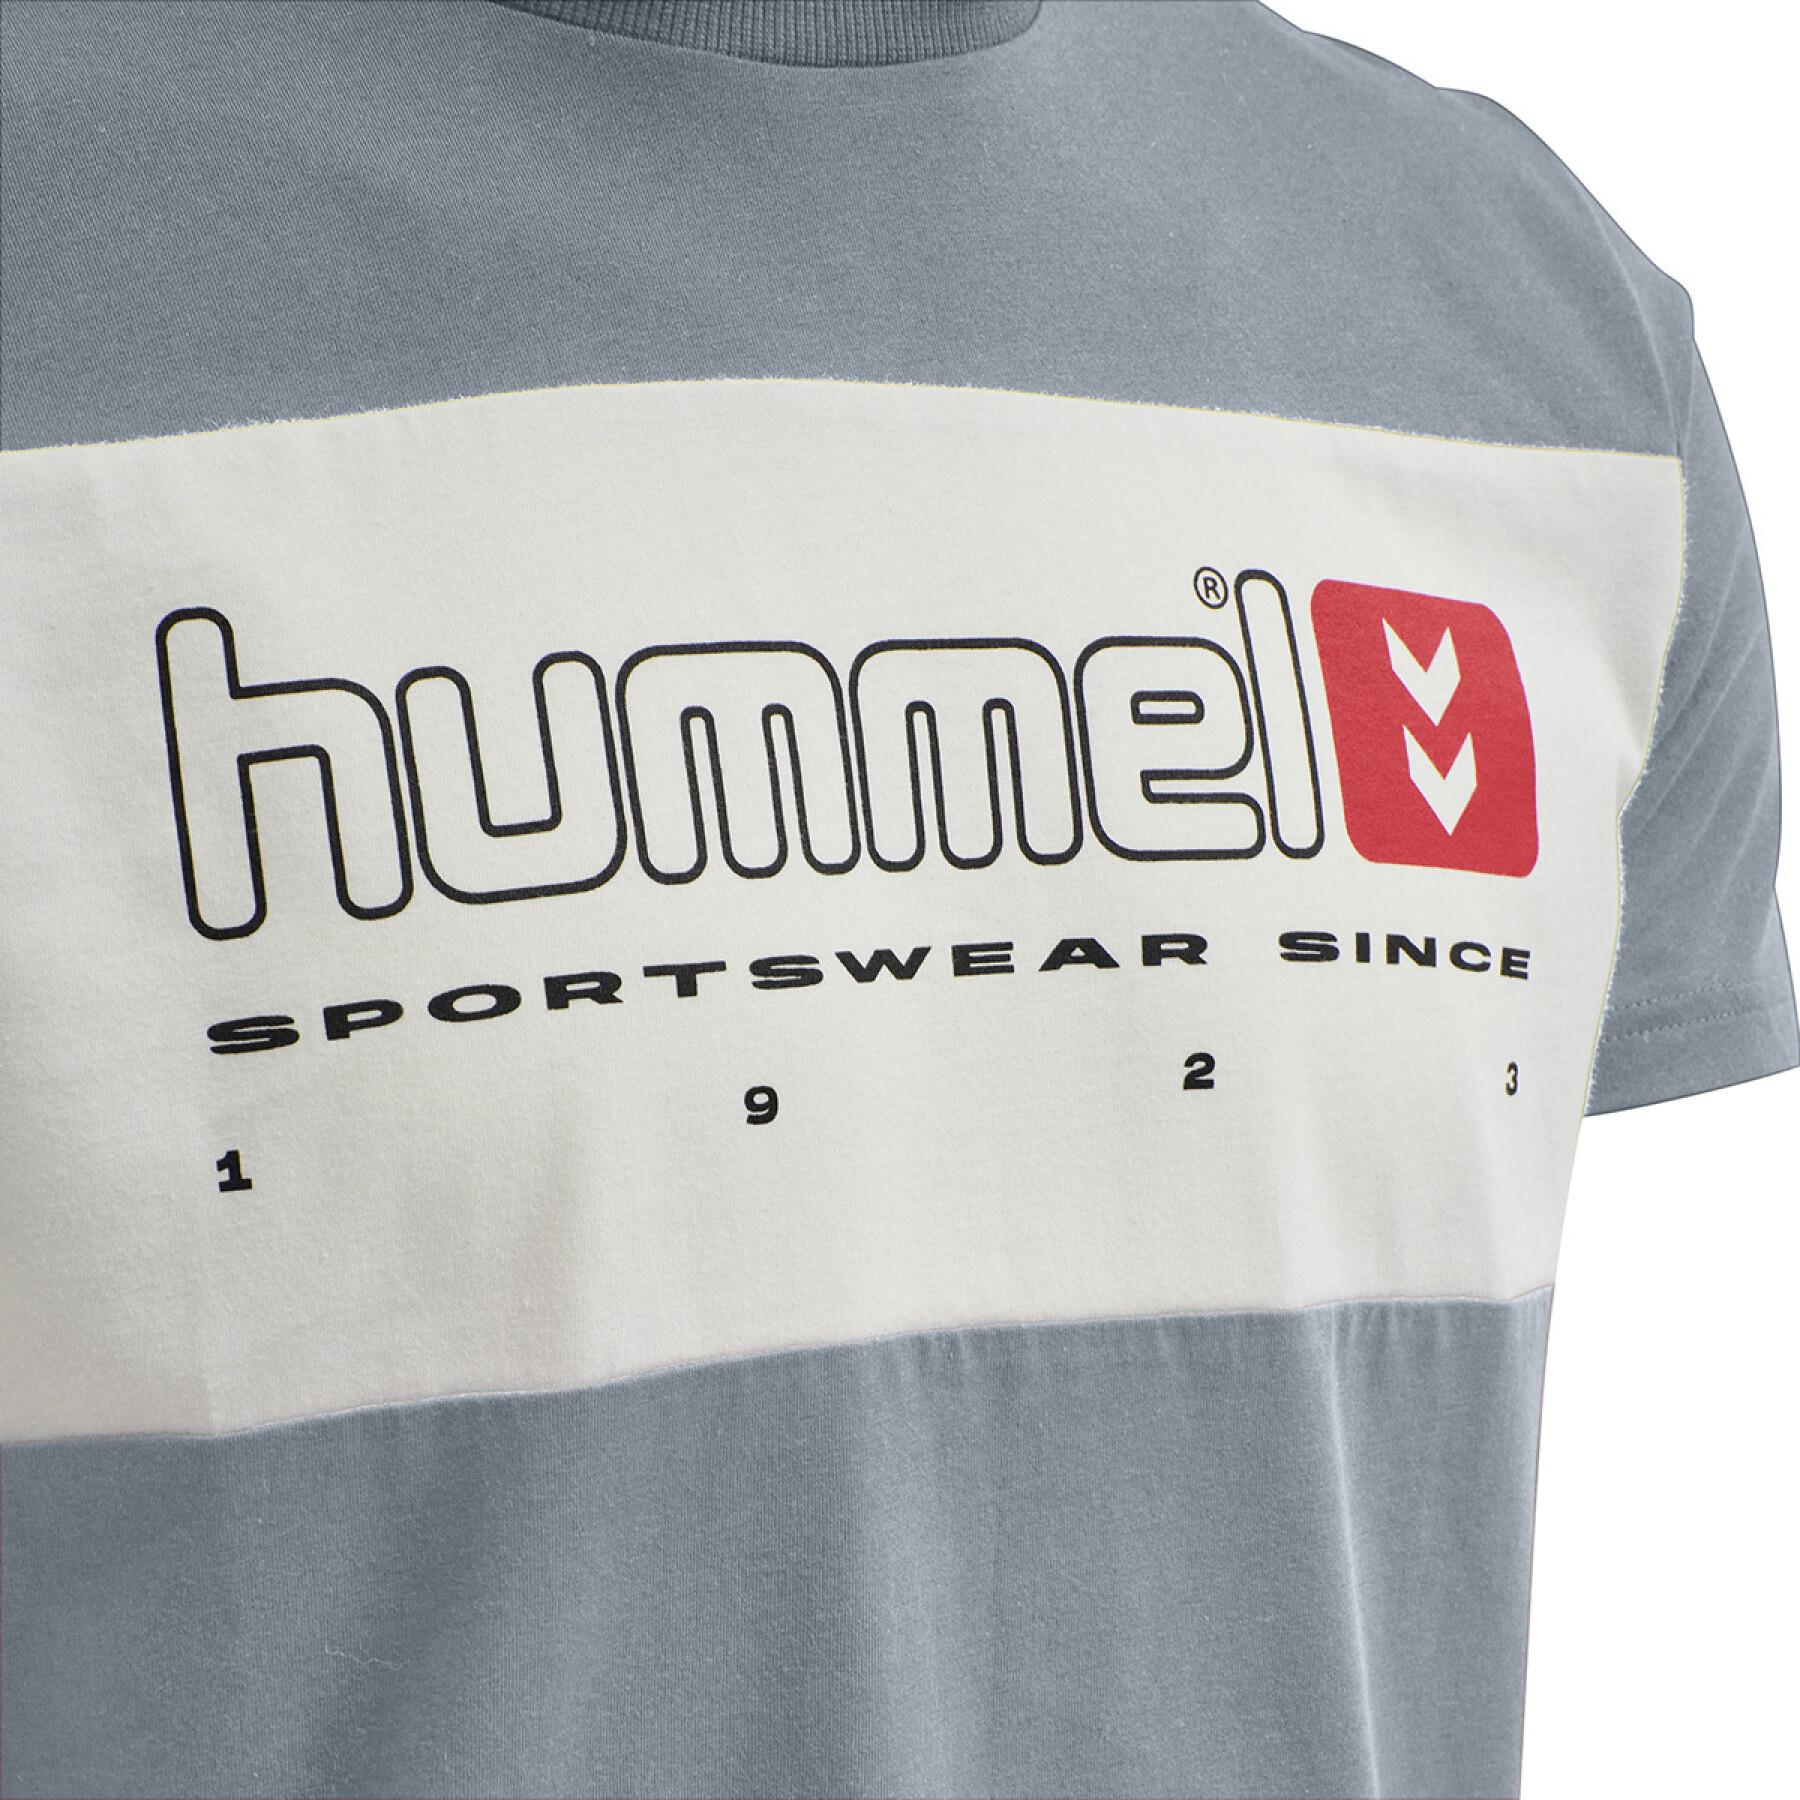 Koszulka Hummel hmlLGC musa